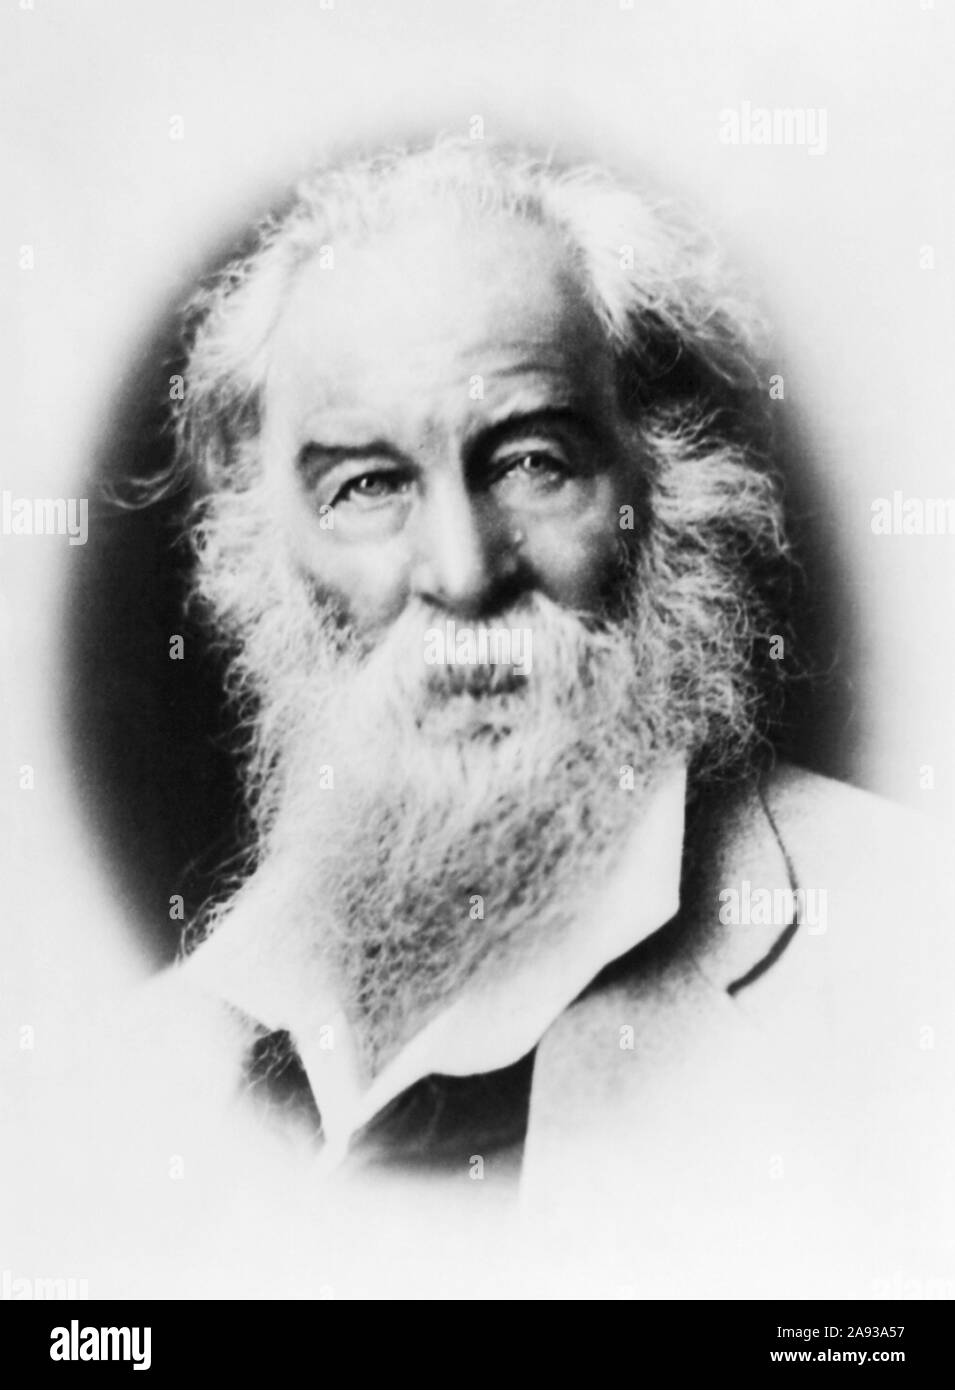 Jahrgang Porträt Foto der amerikanischen Dichter, Essayist und Journalist Walt Whitman (1819 - 1892). Foto ca. 1869 durch H Goldsmith. Stockfoto